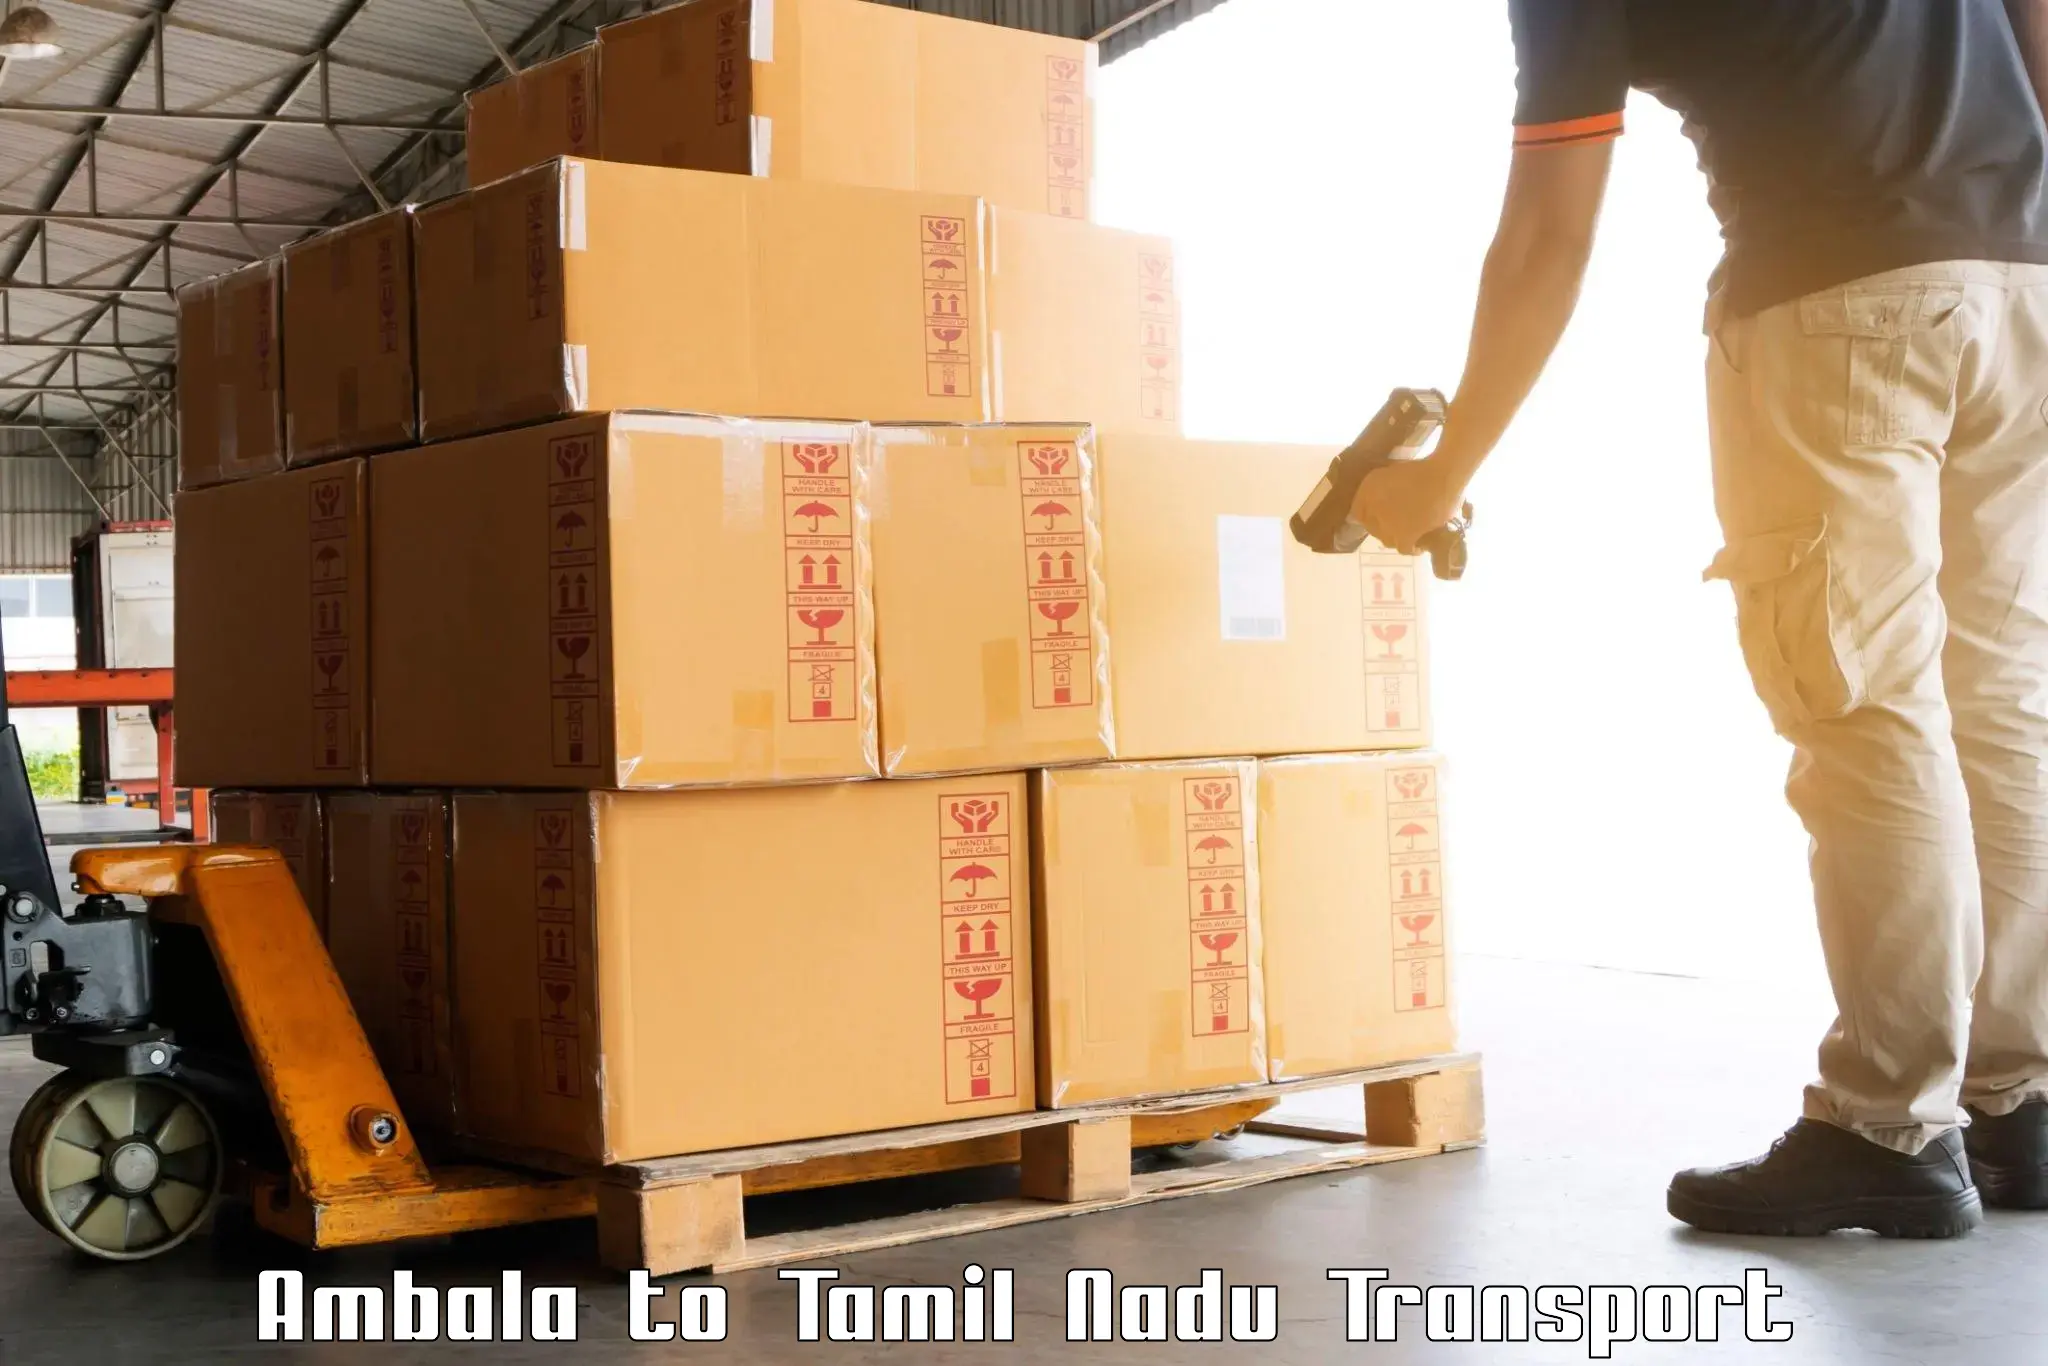 Inland transportation services Ambala to Tallakulam